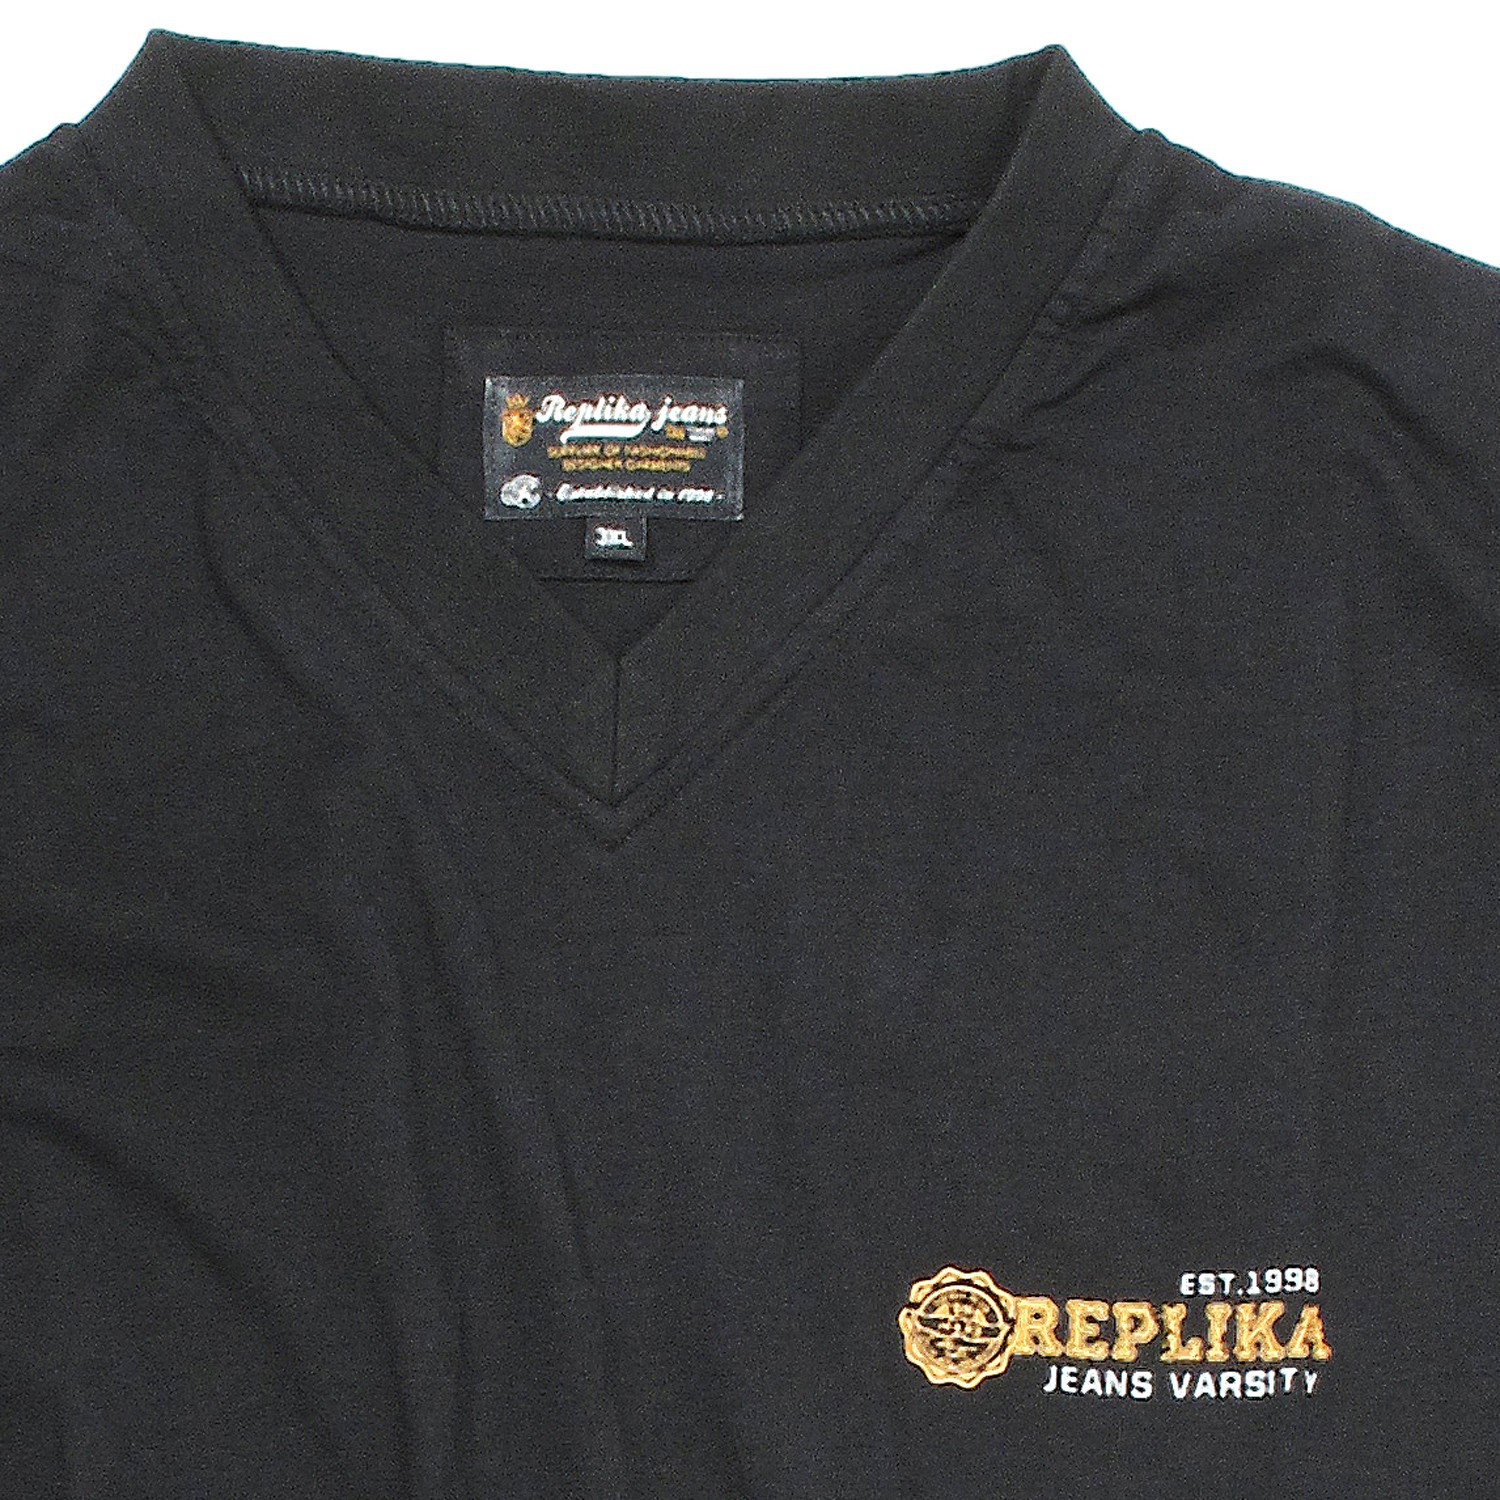 T-shirt noir de Replika grandes tailles jusqu'au 8XL